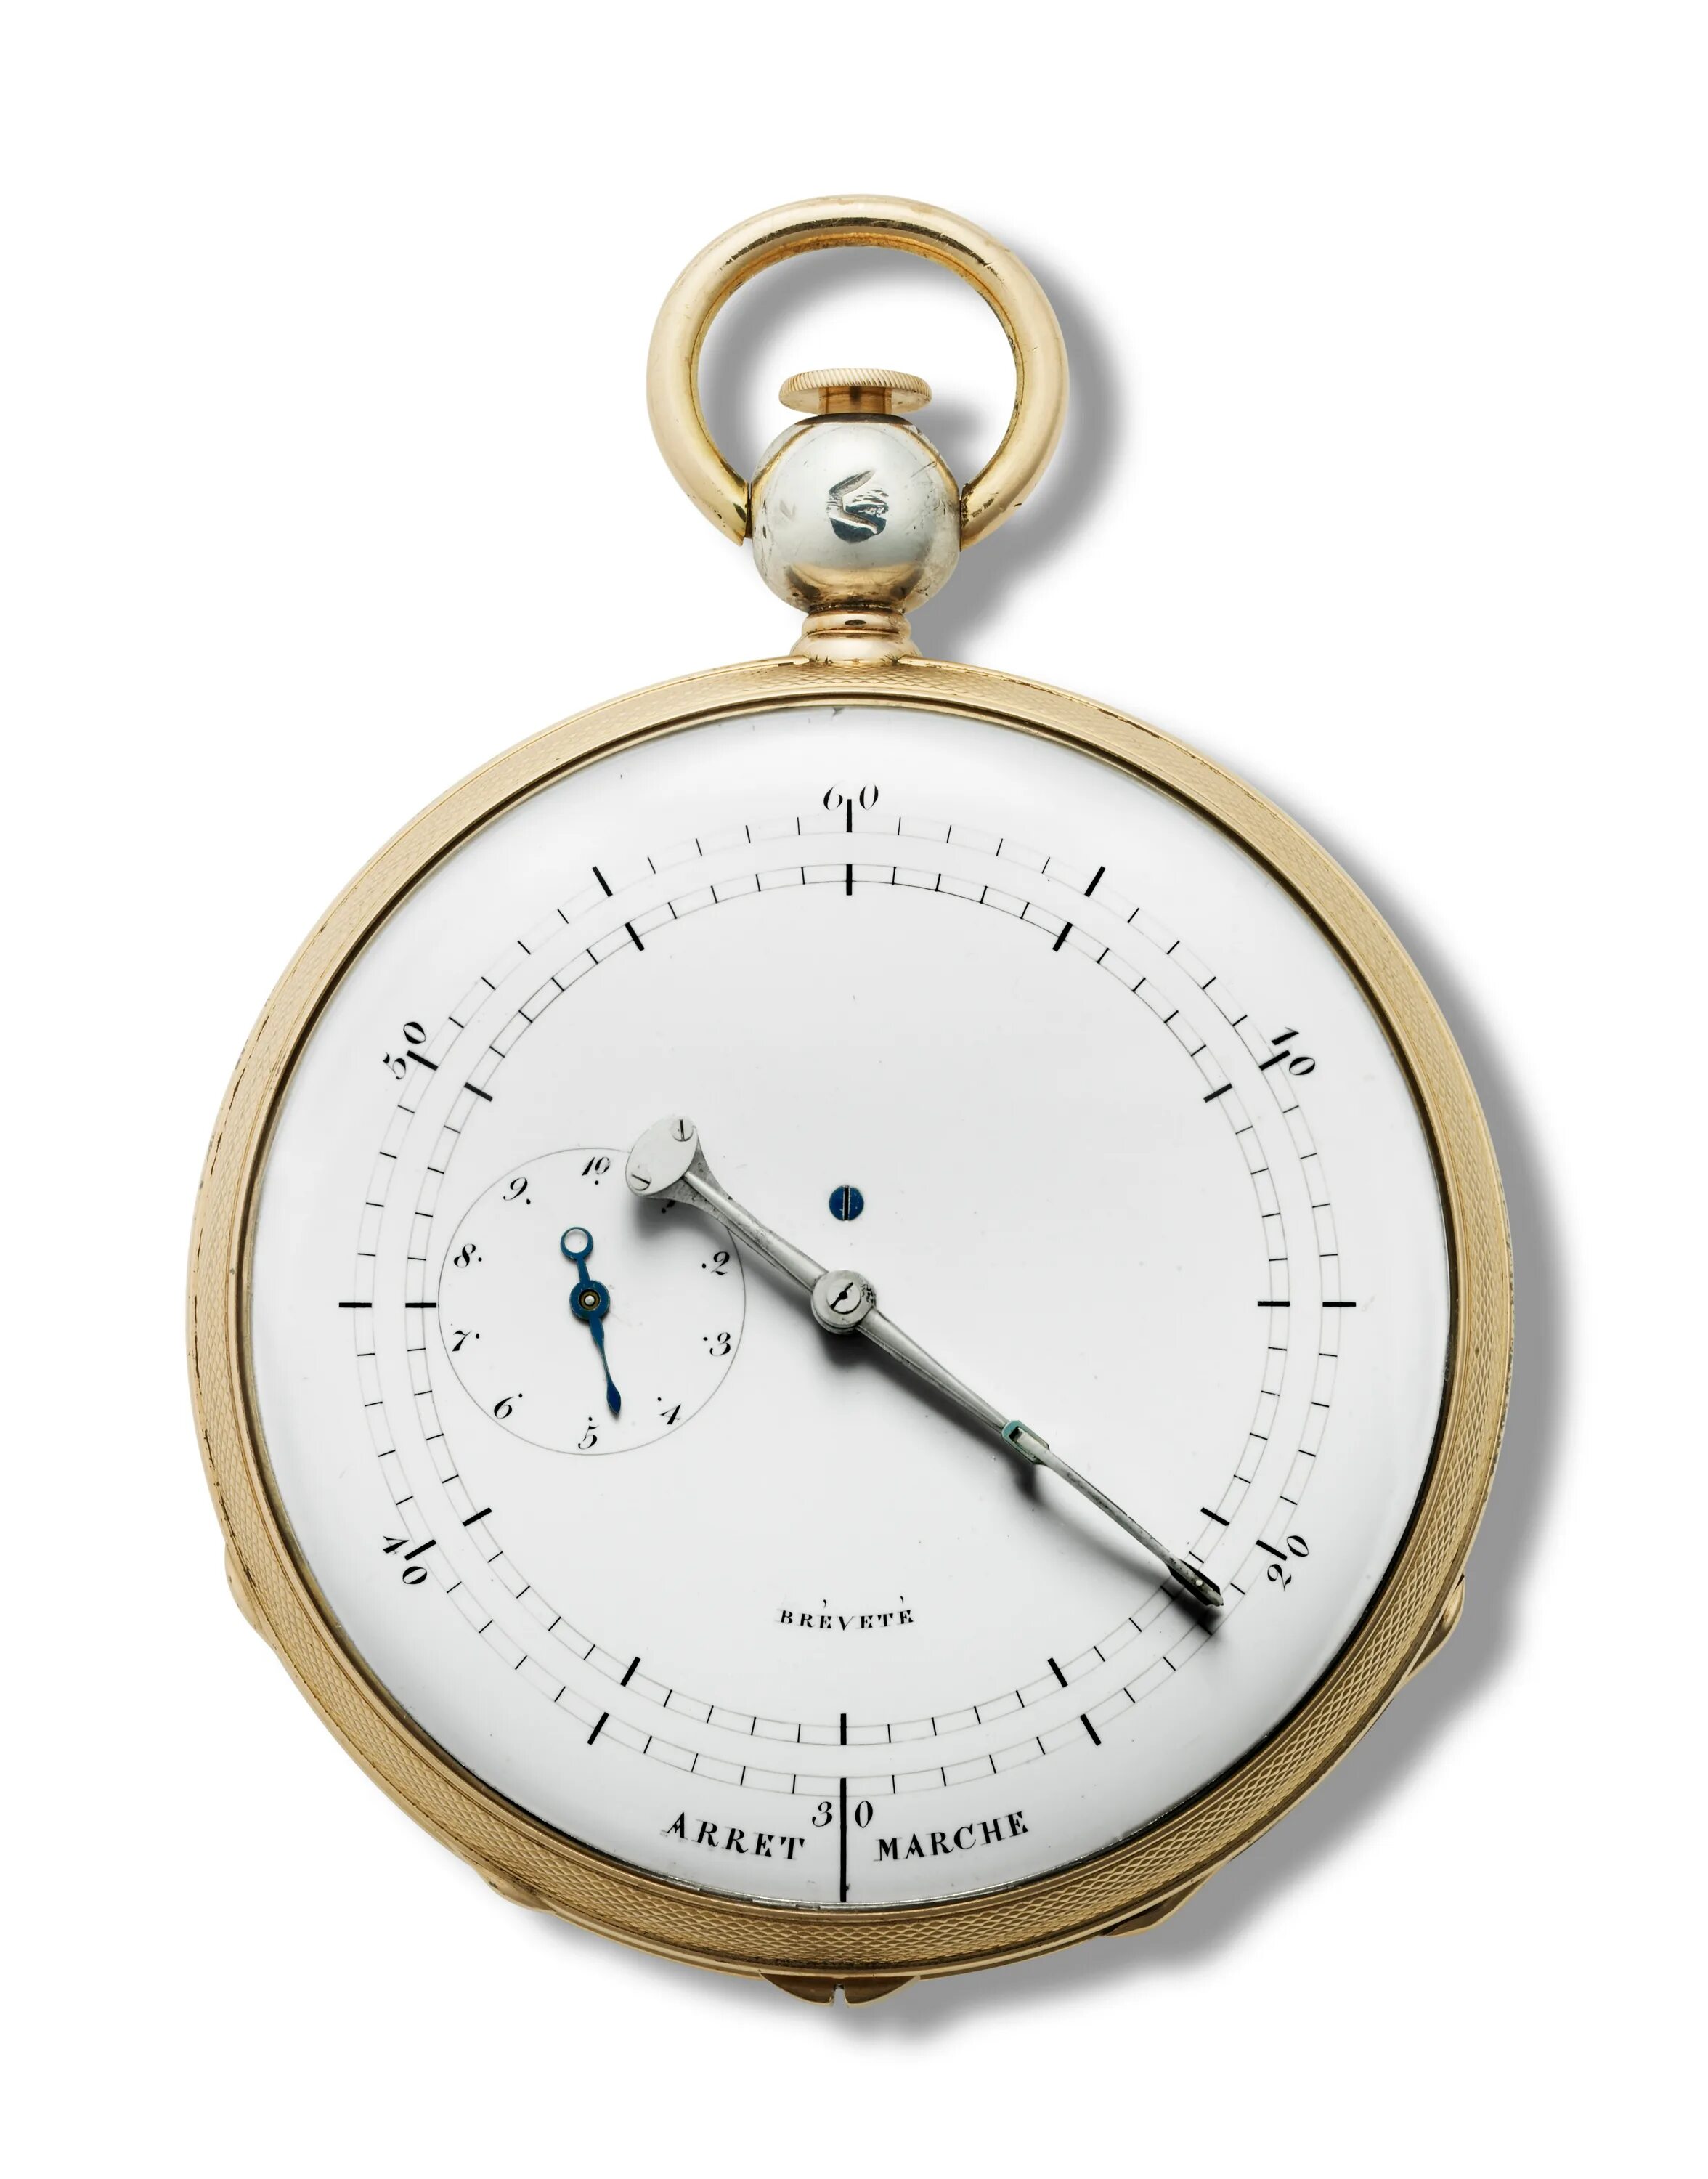 Breguet Chronometre. Часы Breguet 3758 ref 1775. Breguet 1874. Брегет часы Пушкин.